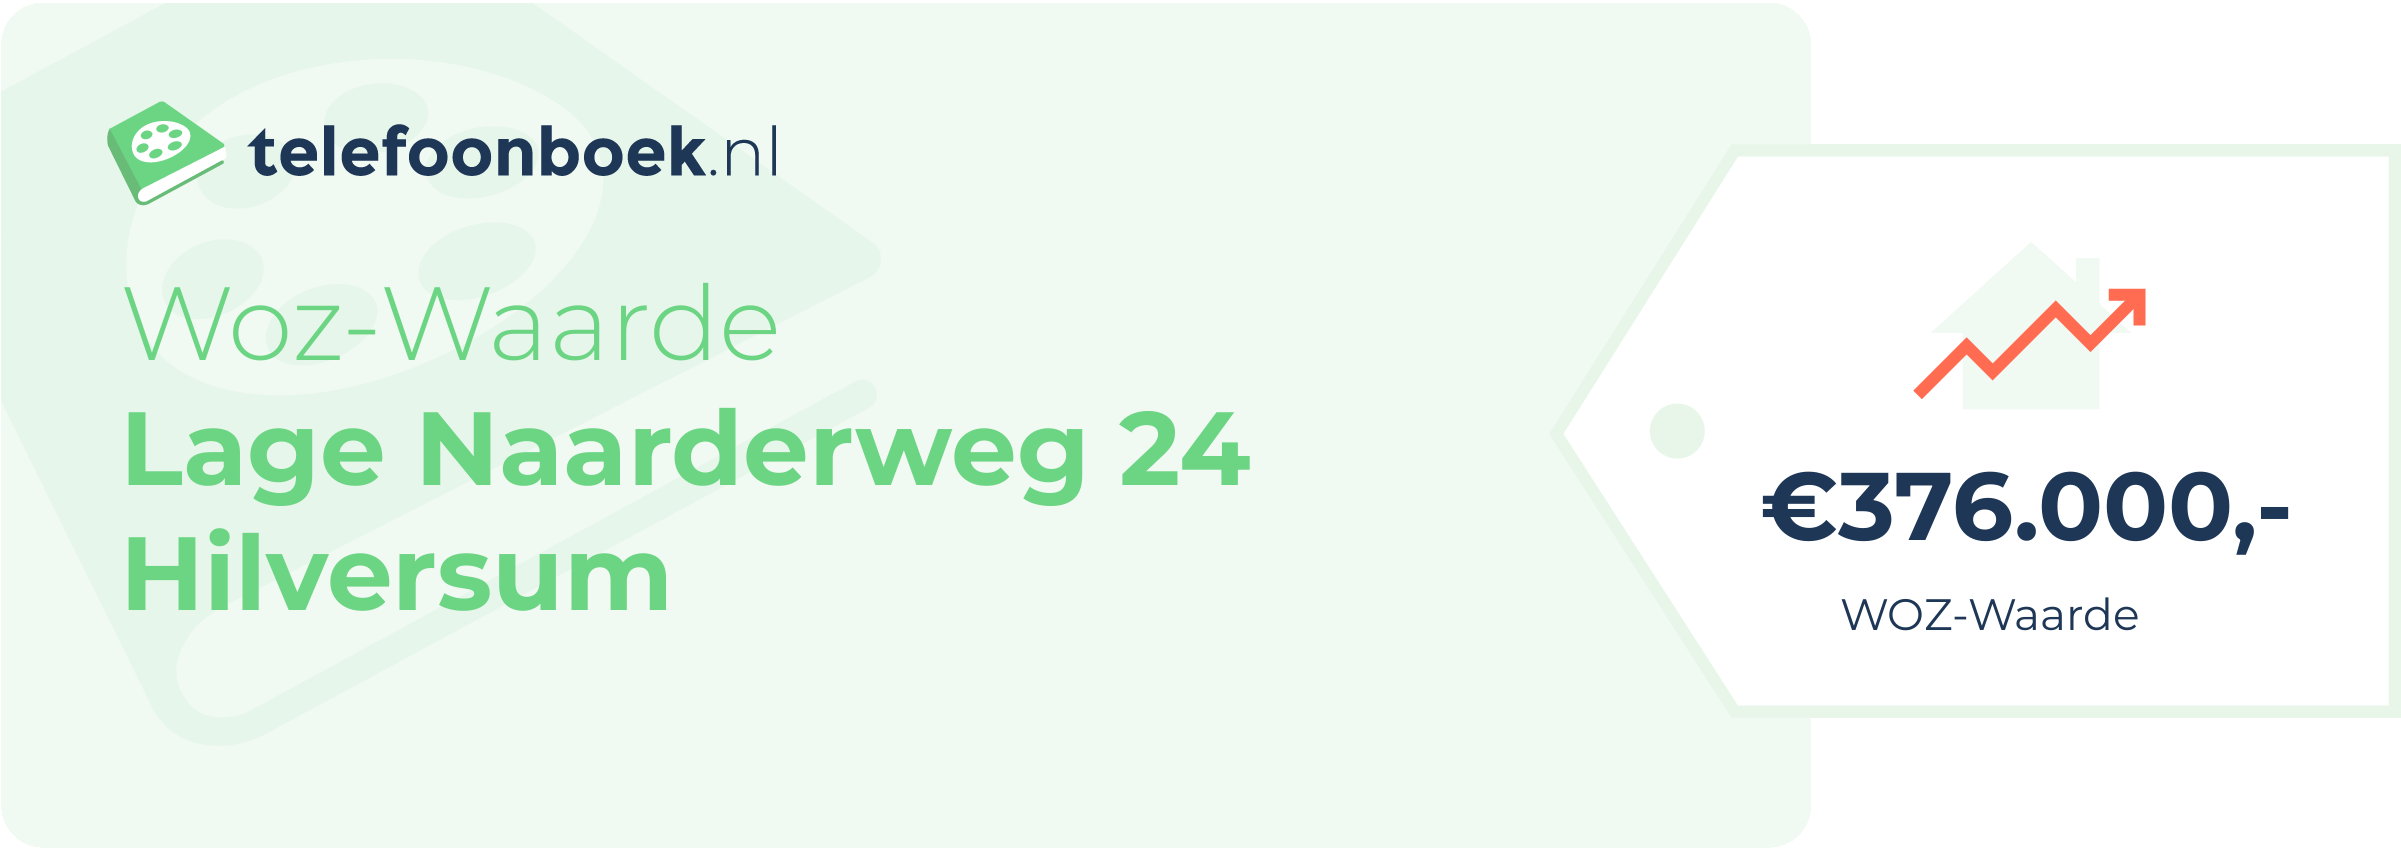 WOZ-waarde Lage Naarderweg 24 Hilversum